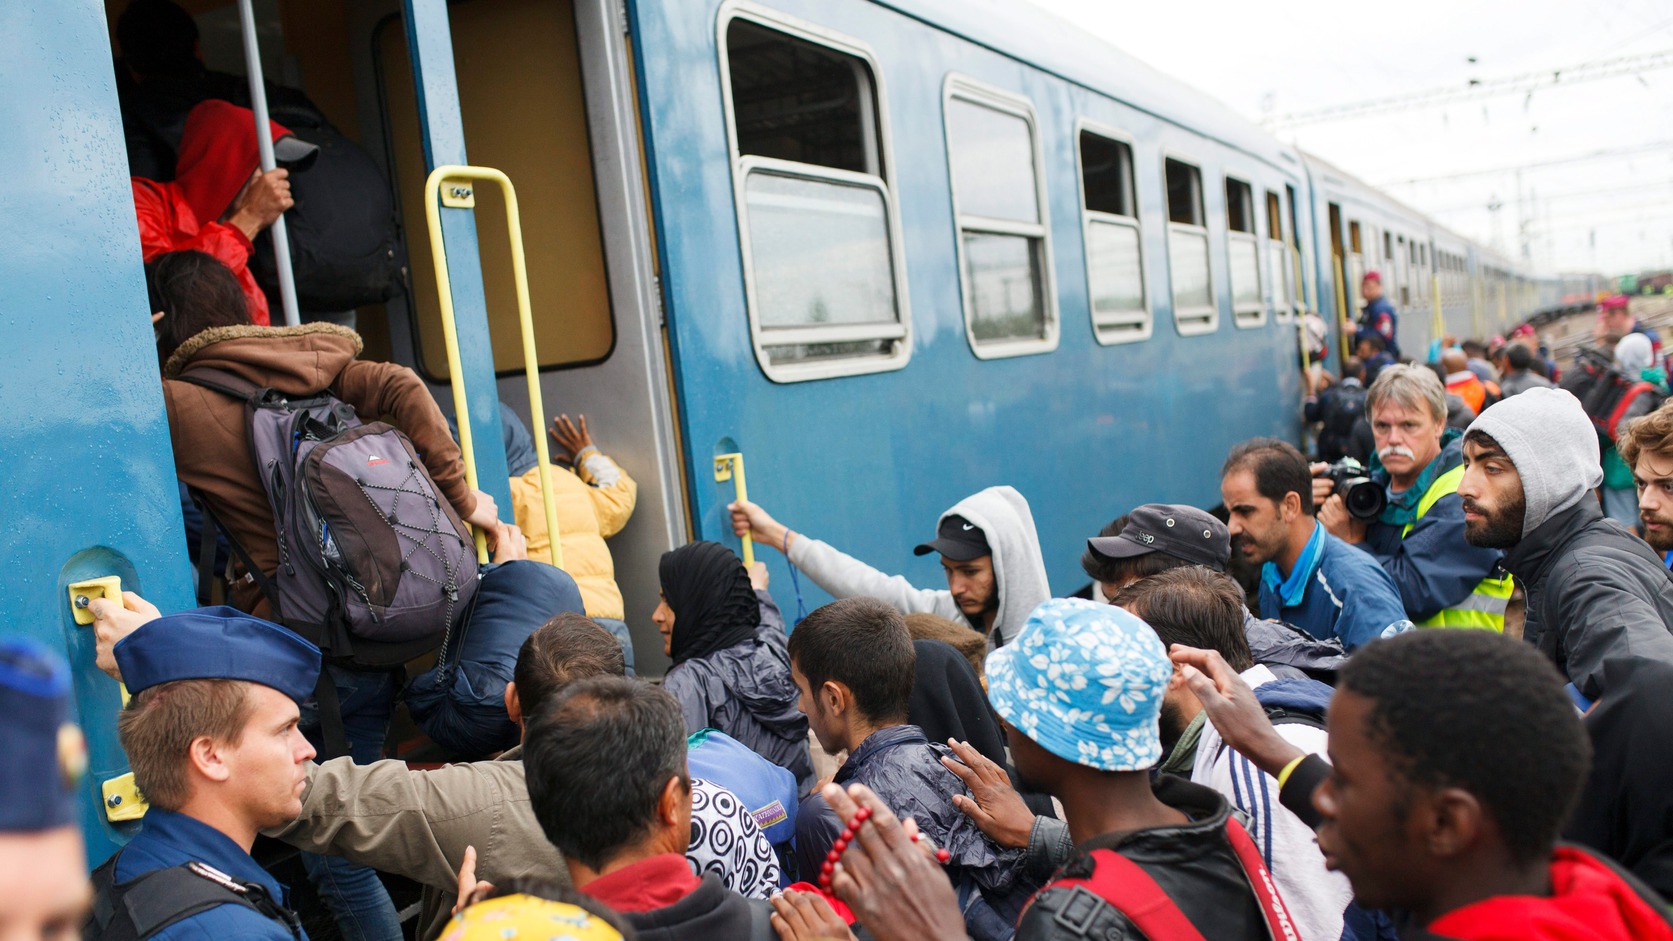 Zákányba újabb migránscsoport érkezett, két férfit leszállítottak a rendőrök a vonatról